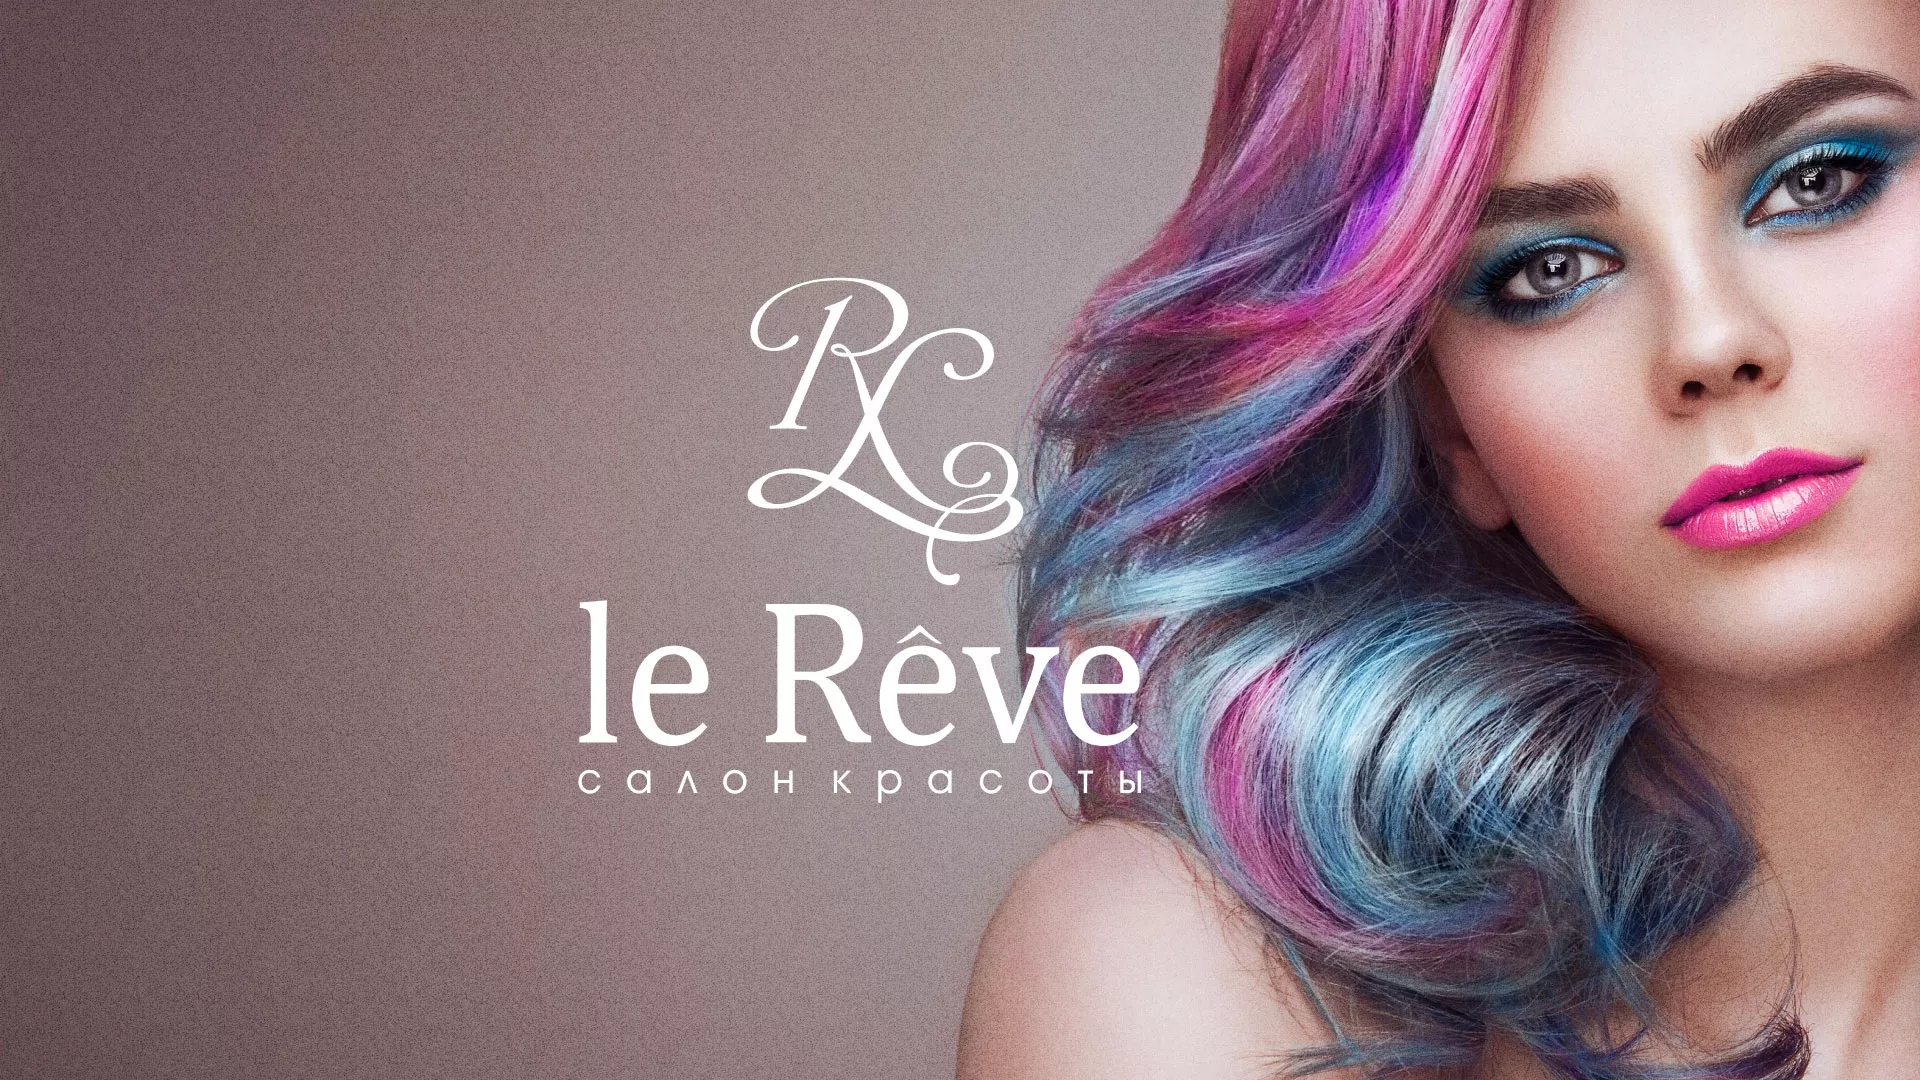 Создание сайта для салона красоты «Le Reve» в Кондопоге